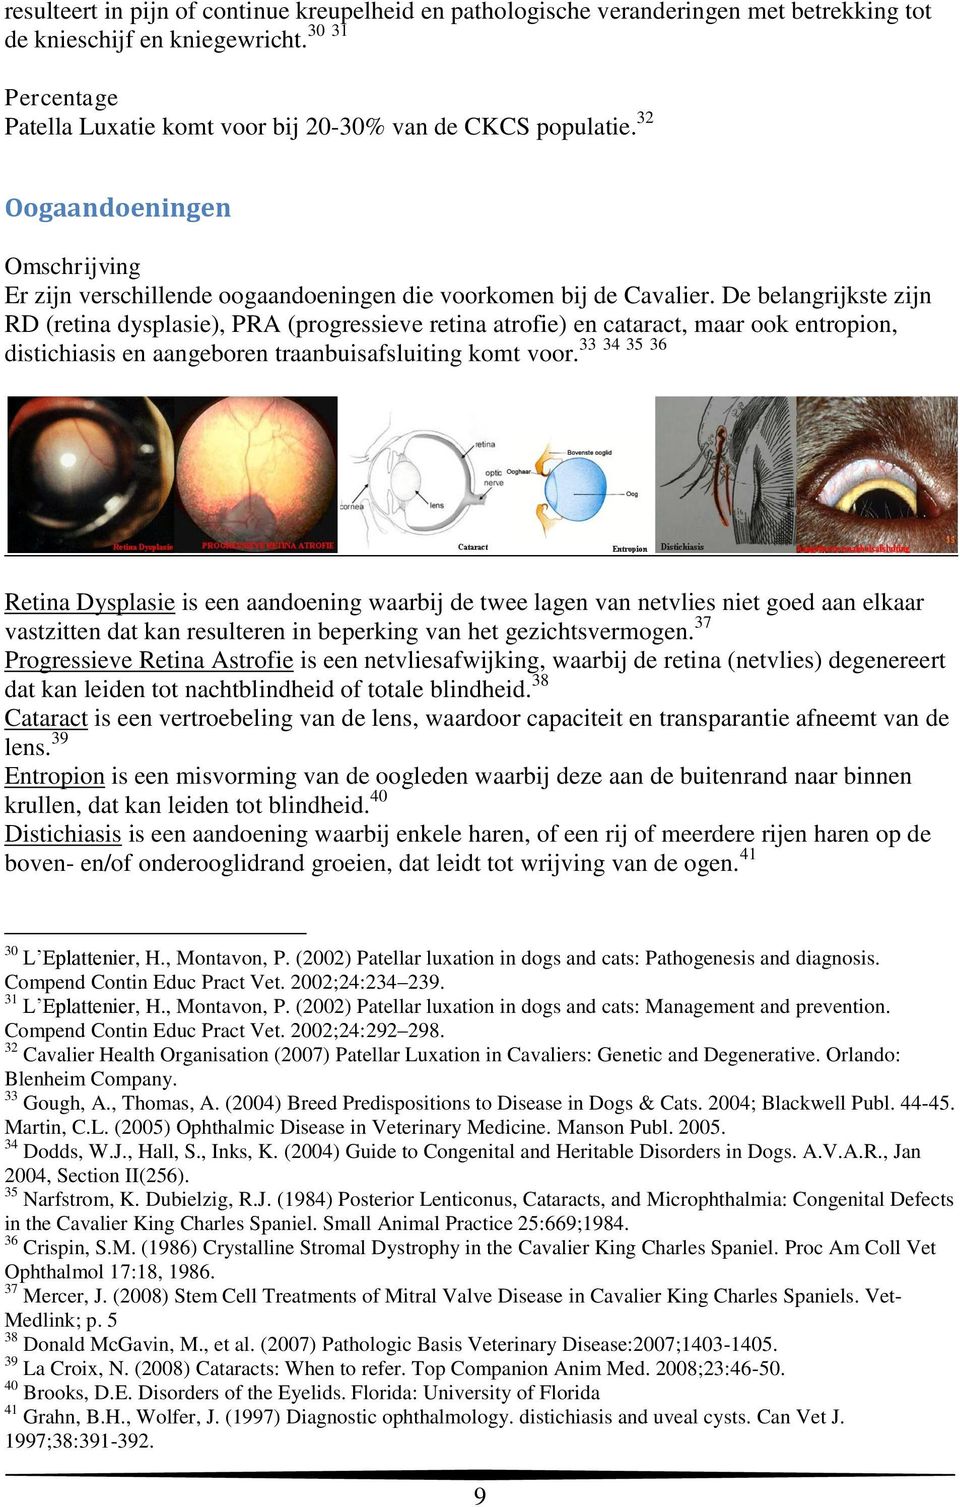 De belangrijkste zijn RD (retina dysplasie), PRA (progressieve retina atrofie) en cataract, maar ook entropion, 33 34 35 36 distichiasis en aangeboren traanbuisafsluiting komt voor.